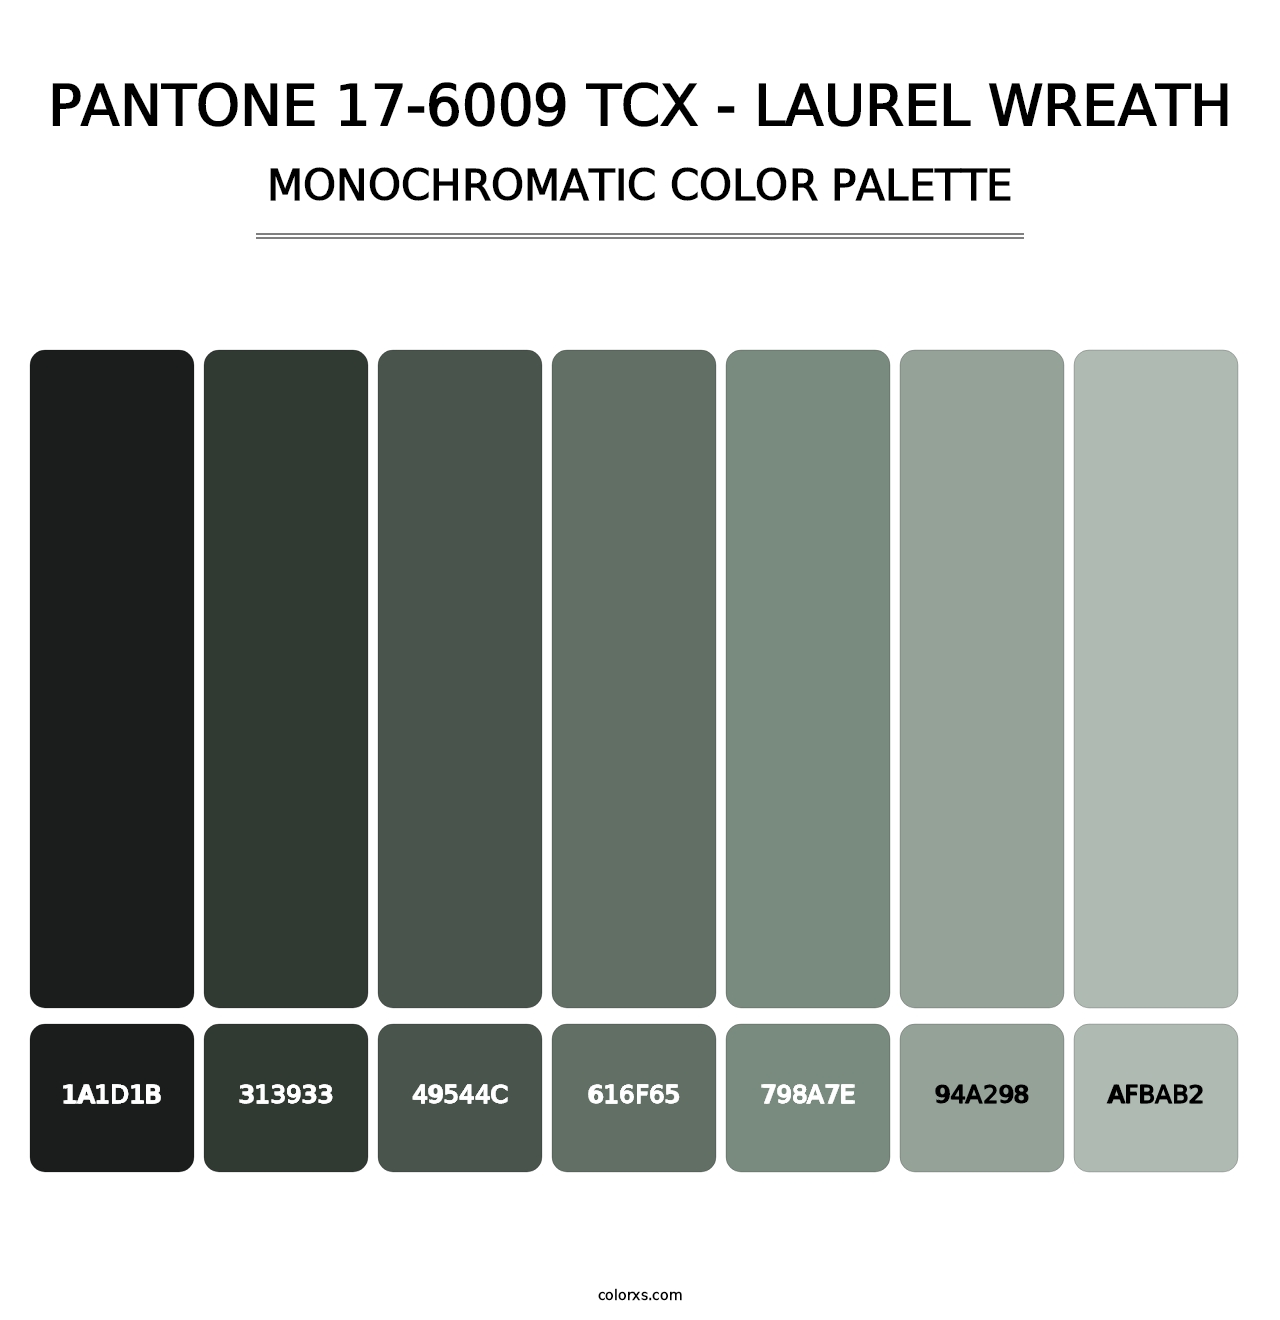 PANTONE 17-6009 TCX - Laurel Wreath - Monochromatic Color Palette